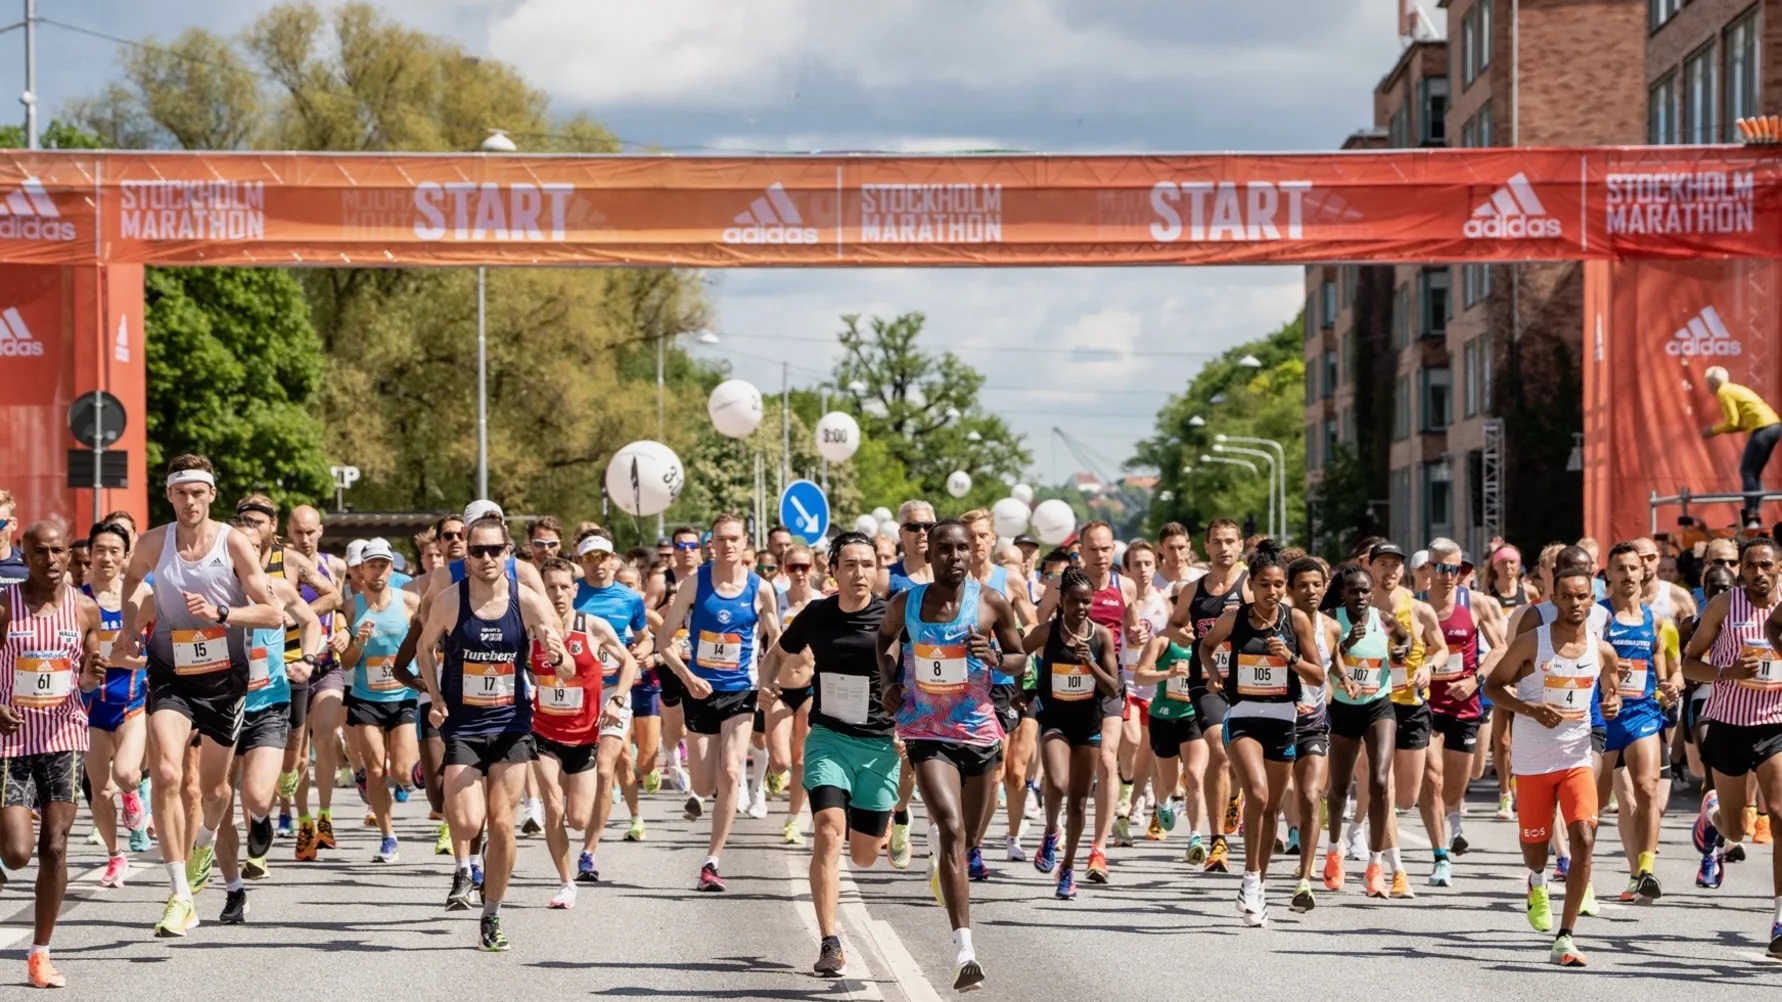 Esitellä 53+ imagen tukholman maraton tulokset